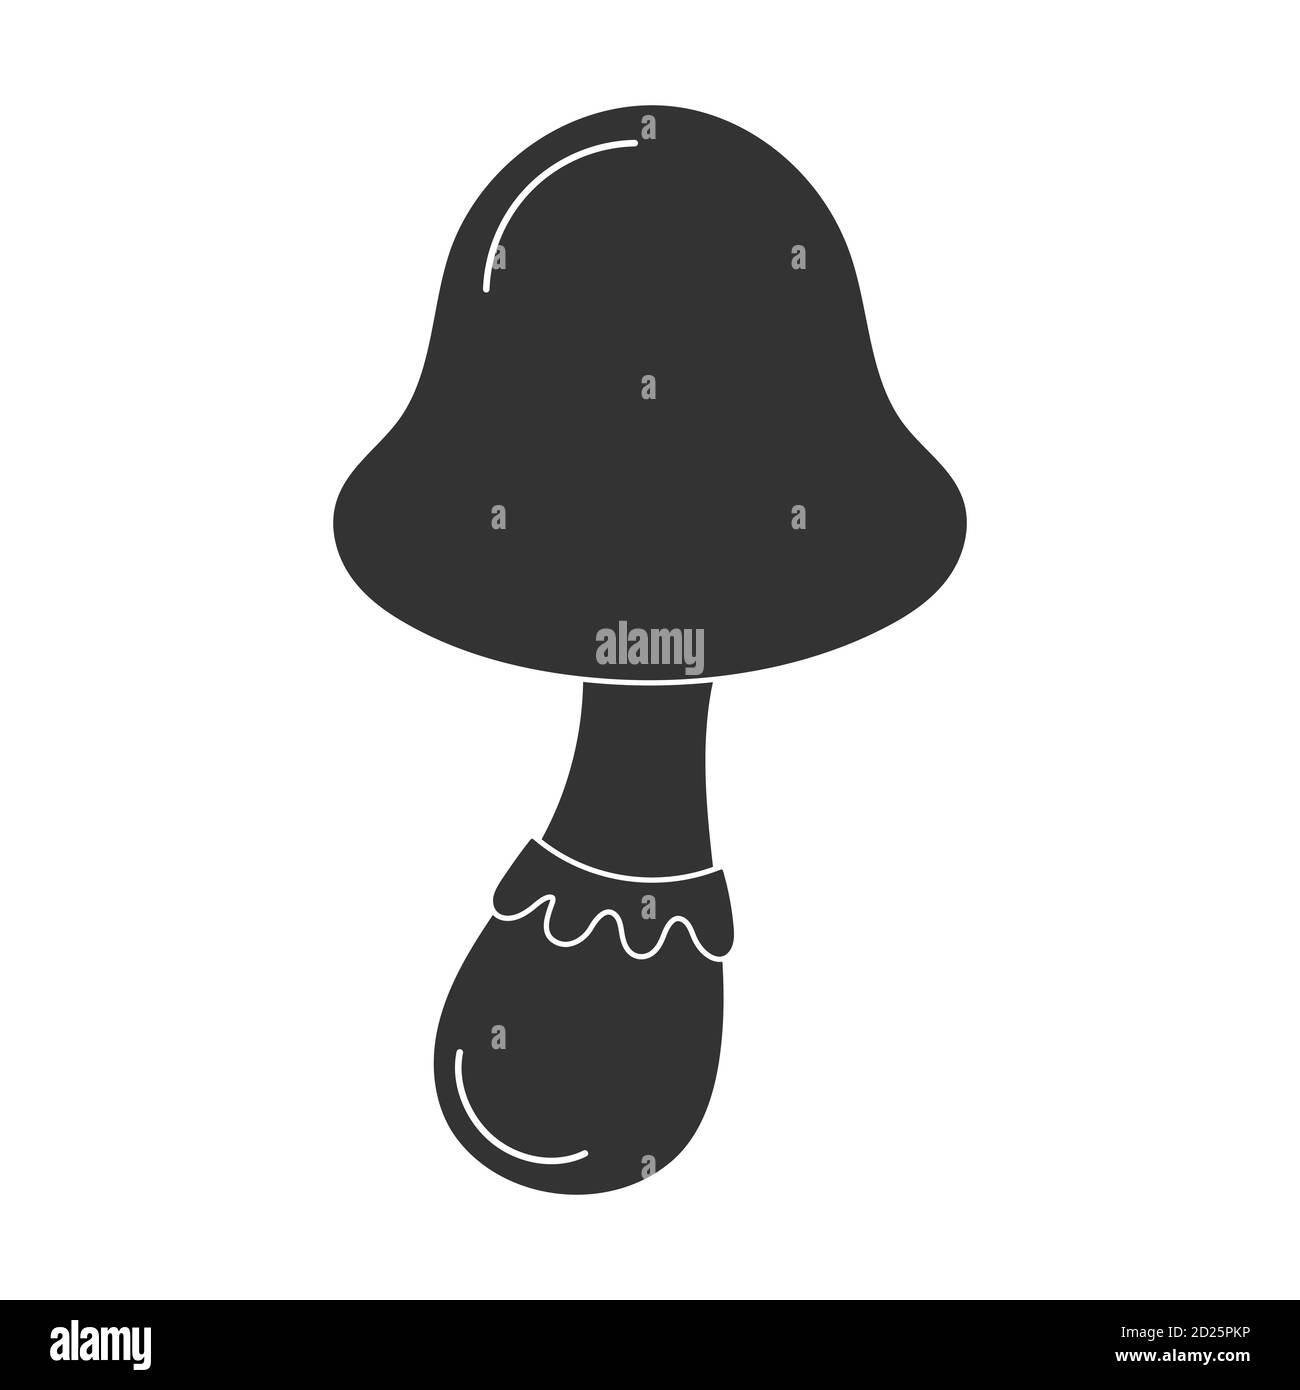 Icône en forme de champignon psilocybin, silhouette noire dans un style de dessin animé plat Illustration de Vecteur